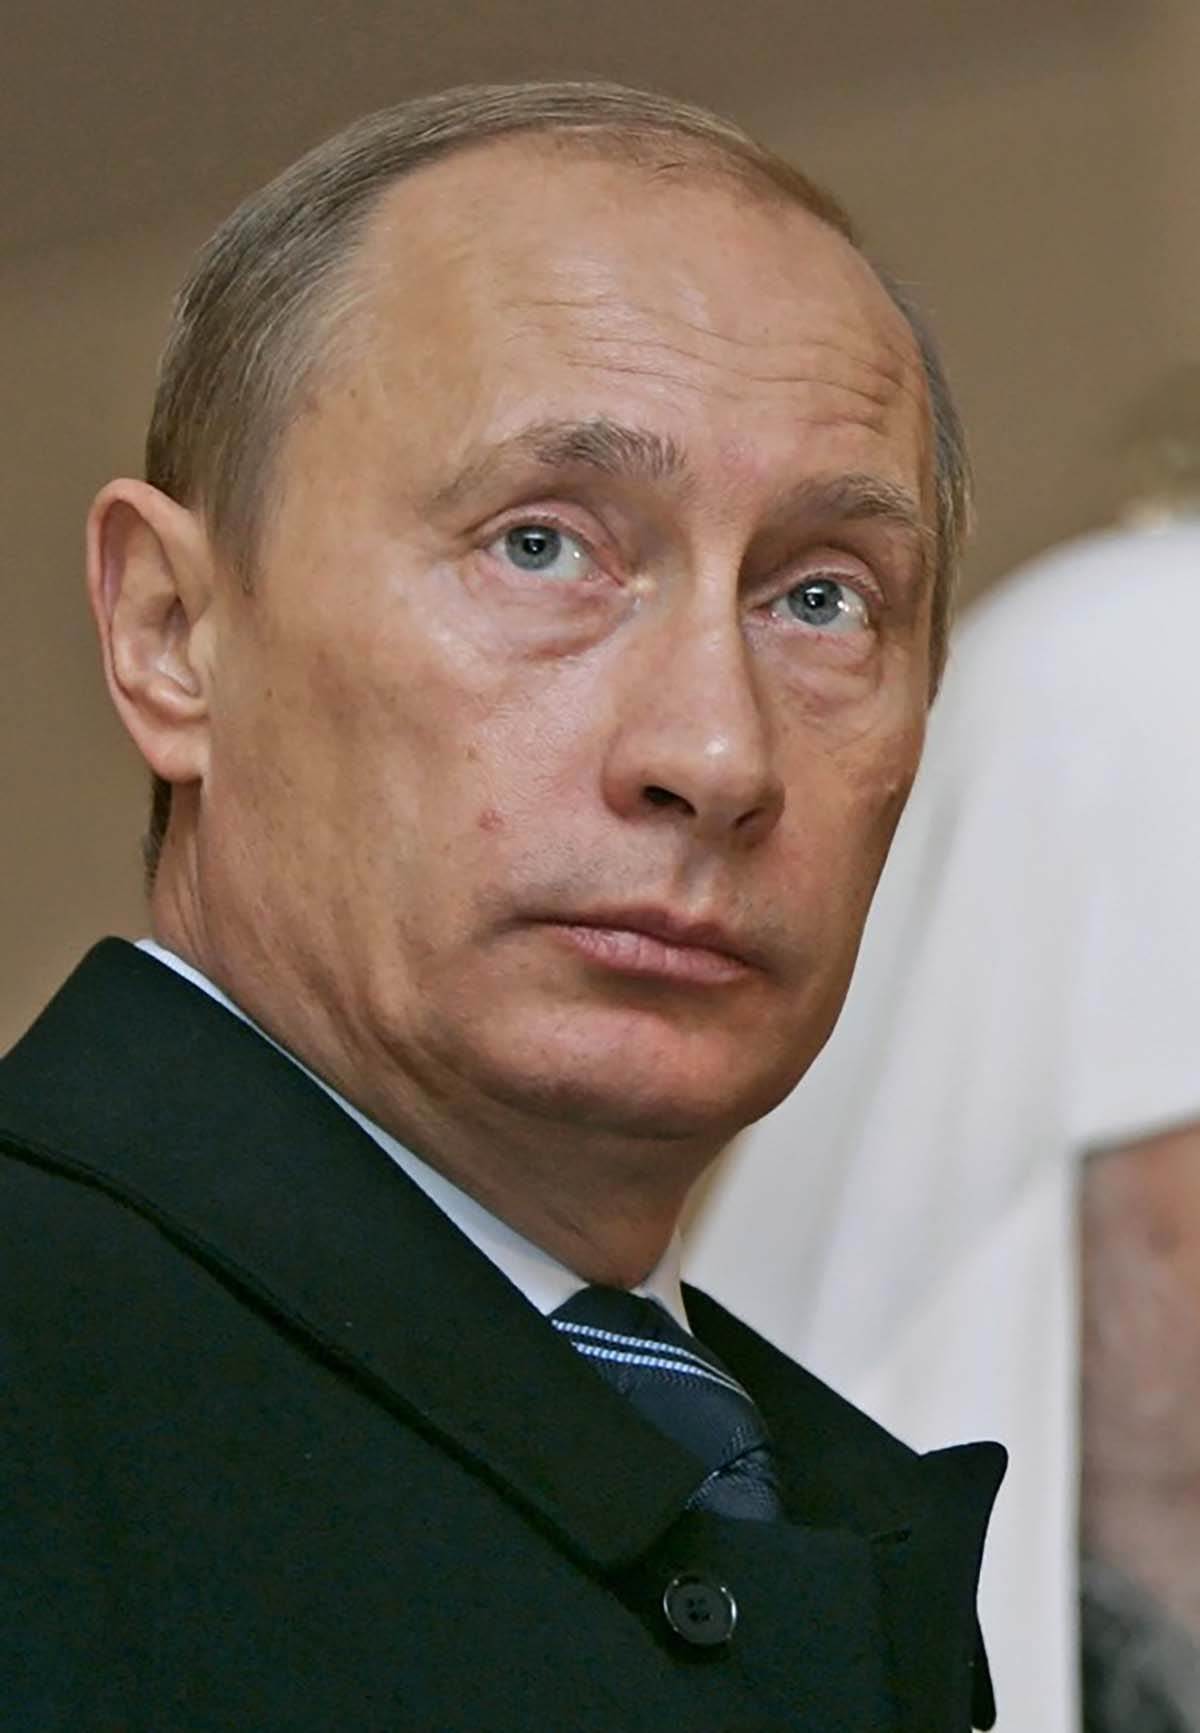  Ko je pravi Vladimir Putin? 